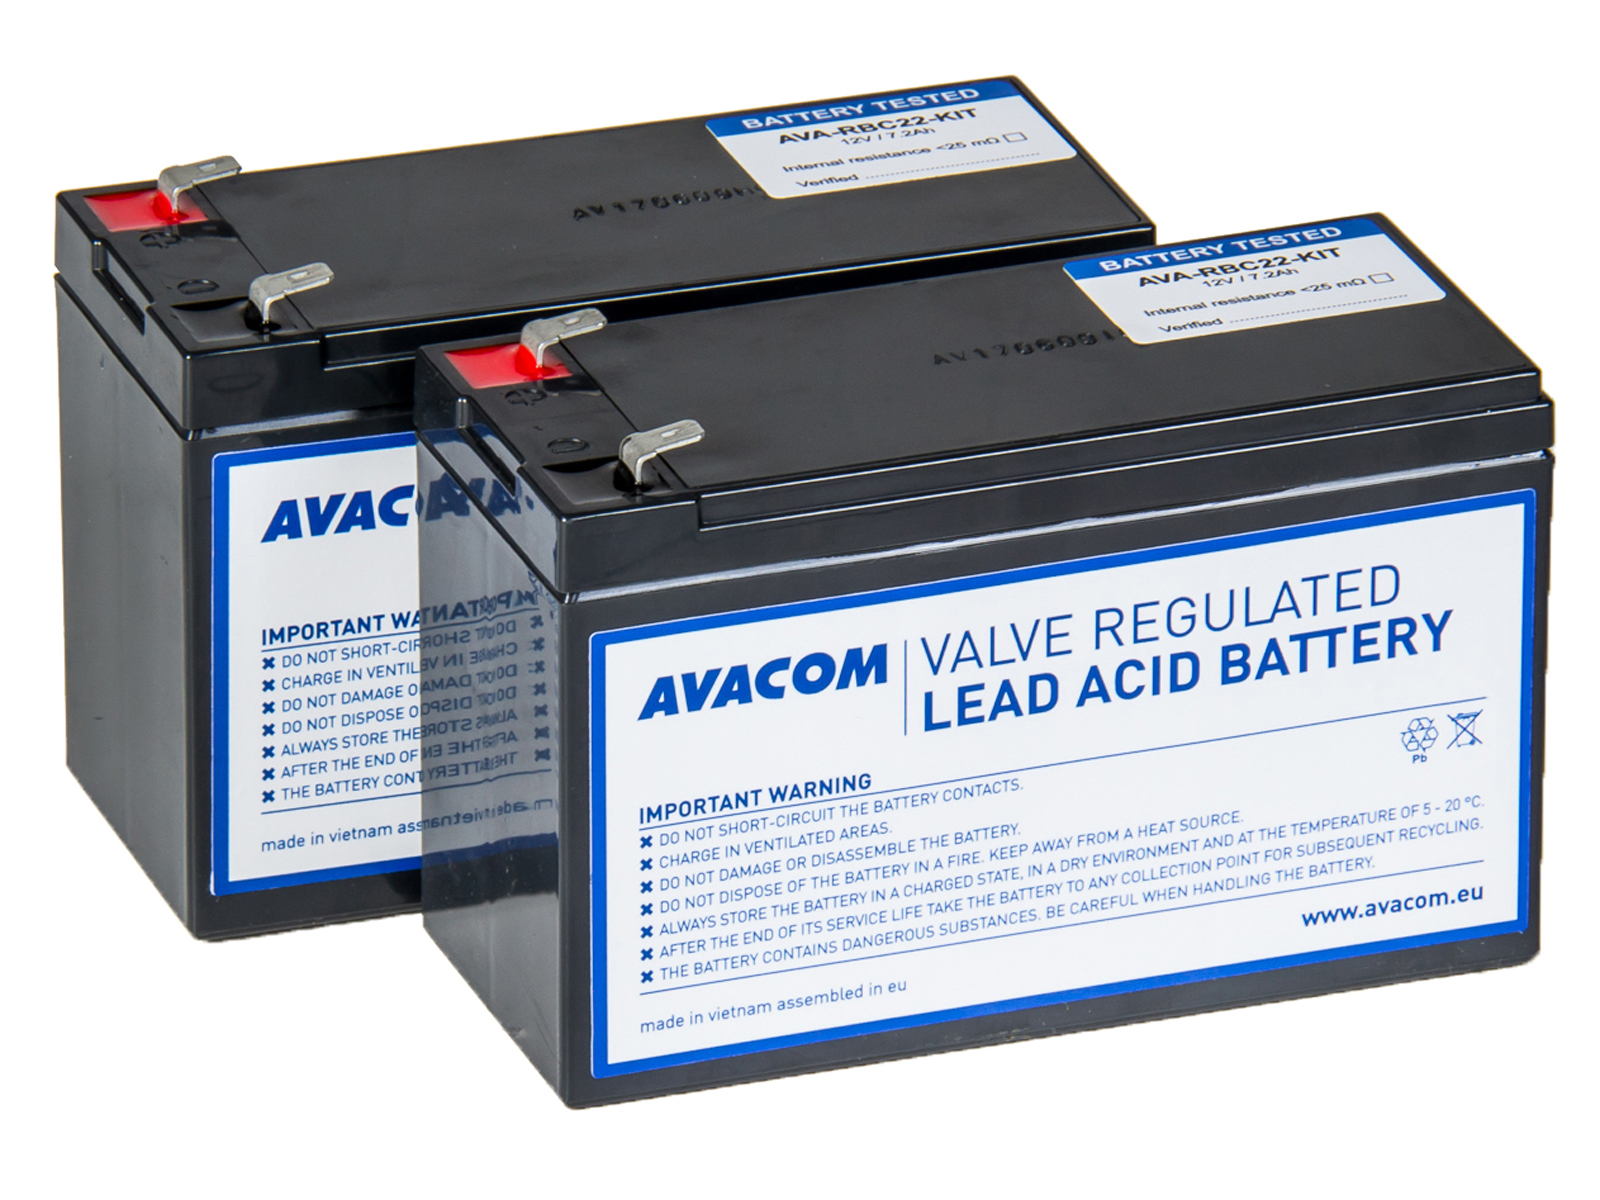 Avacom RBC22 bateriový kit pro renovaci (2ks baterií) - náhrada za APC